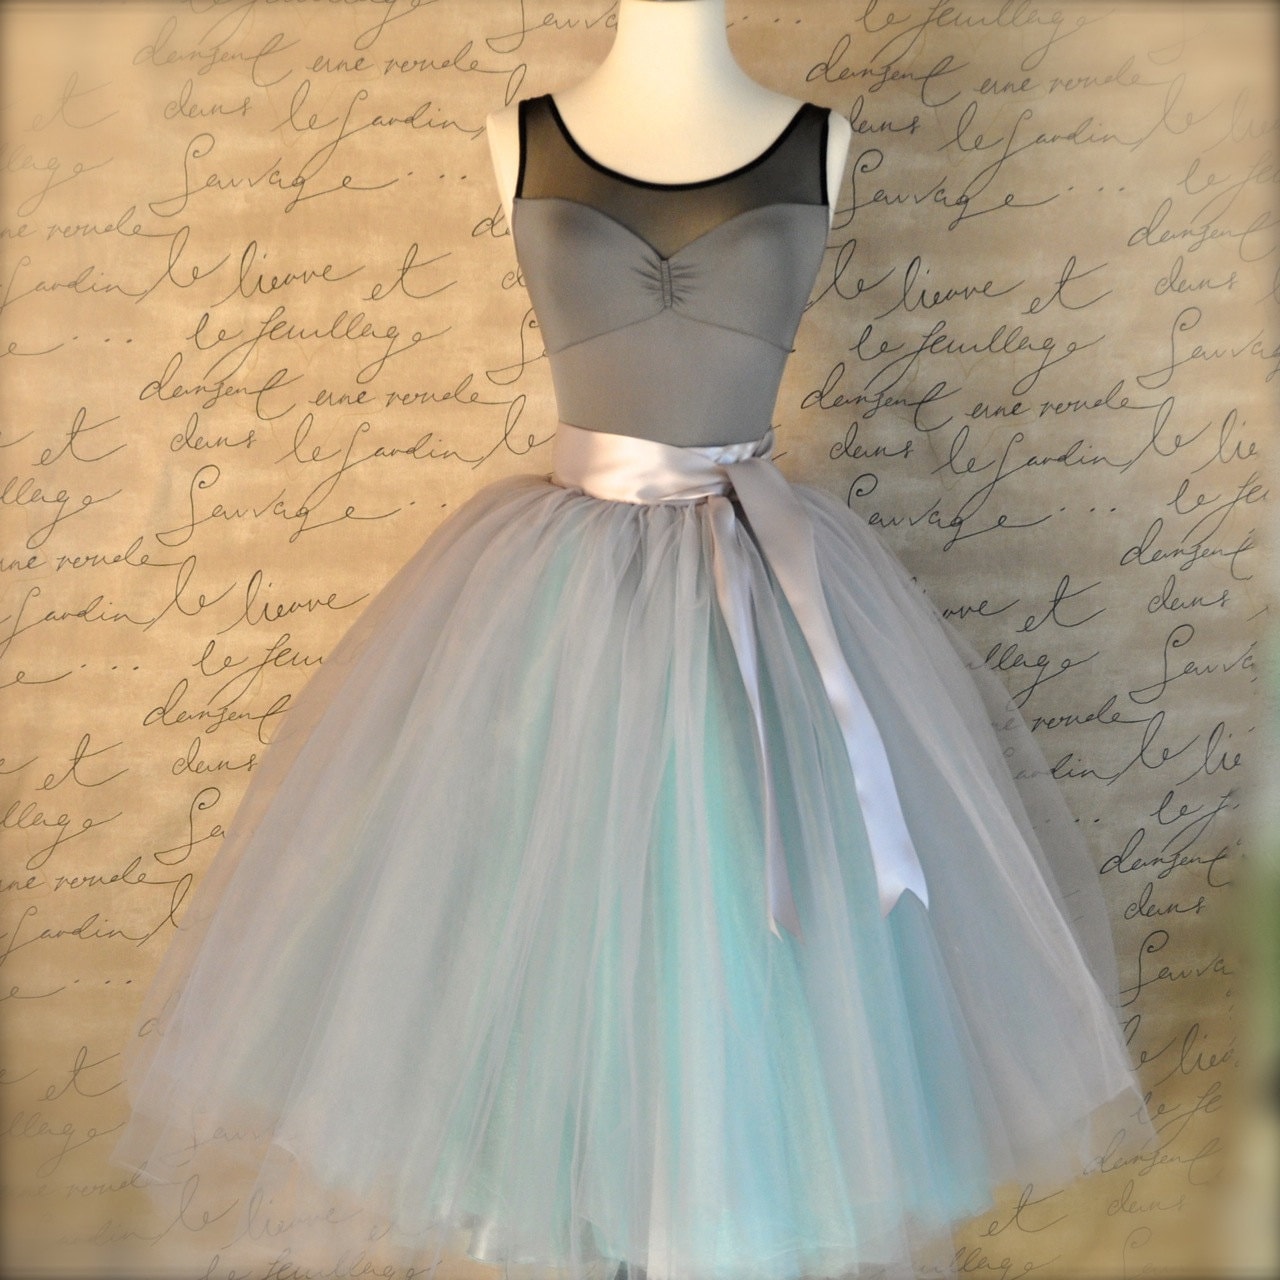 Dove gray and light blue tutu skirt for women. Ballet